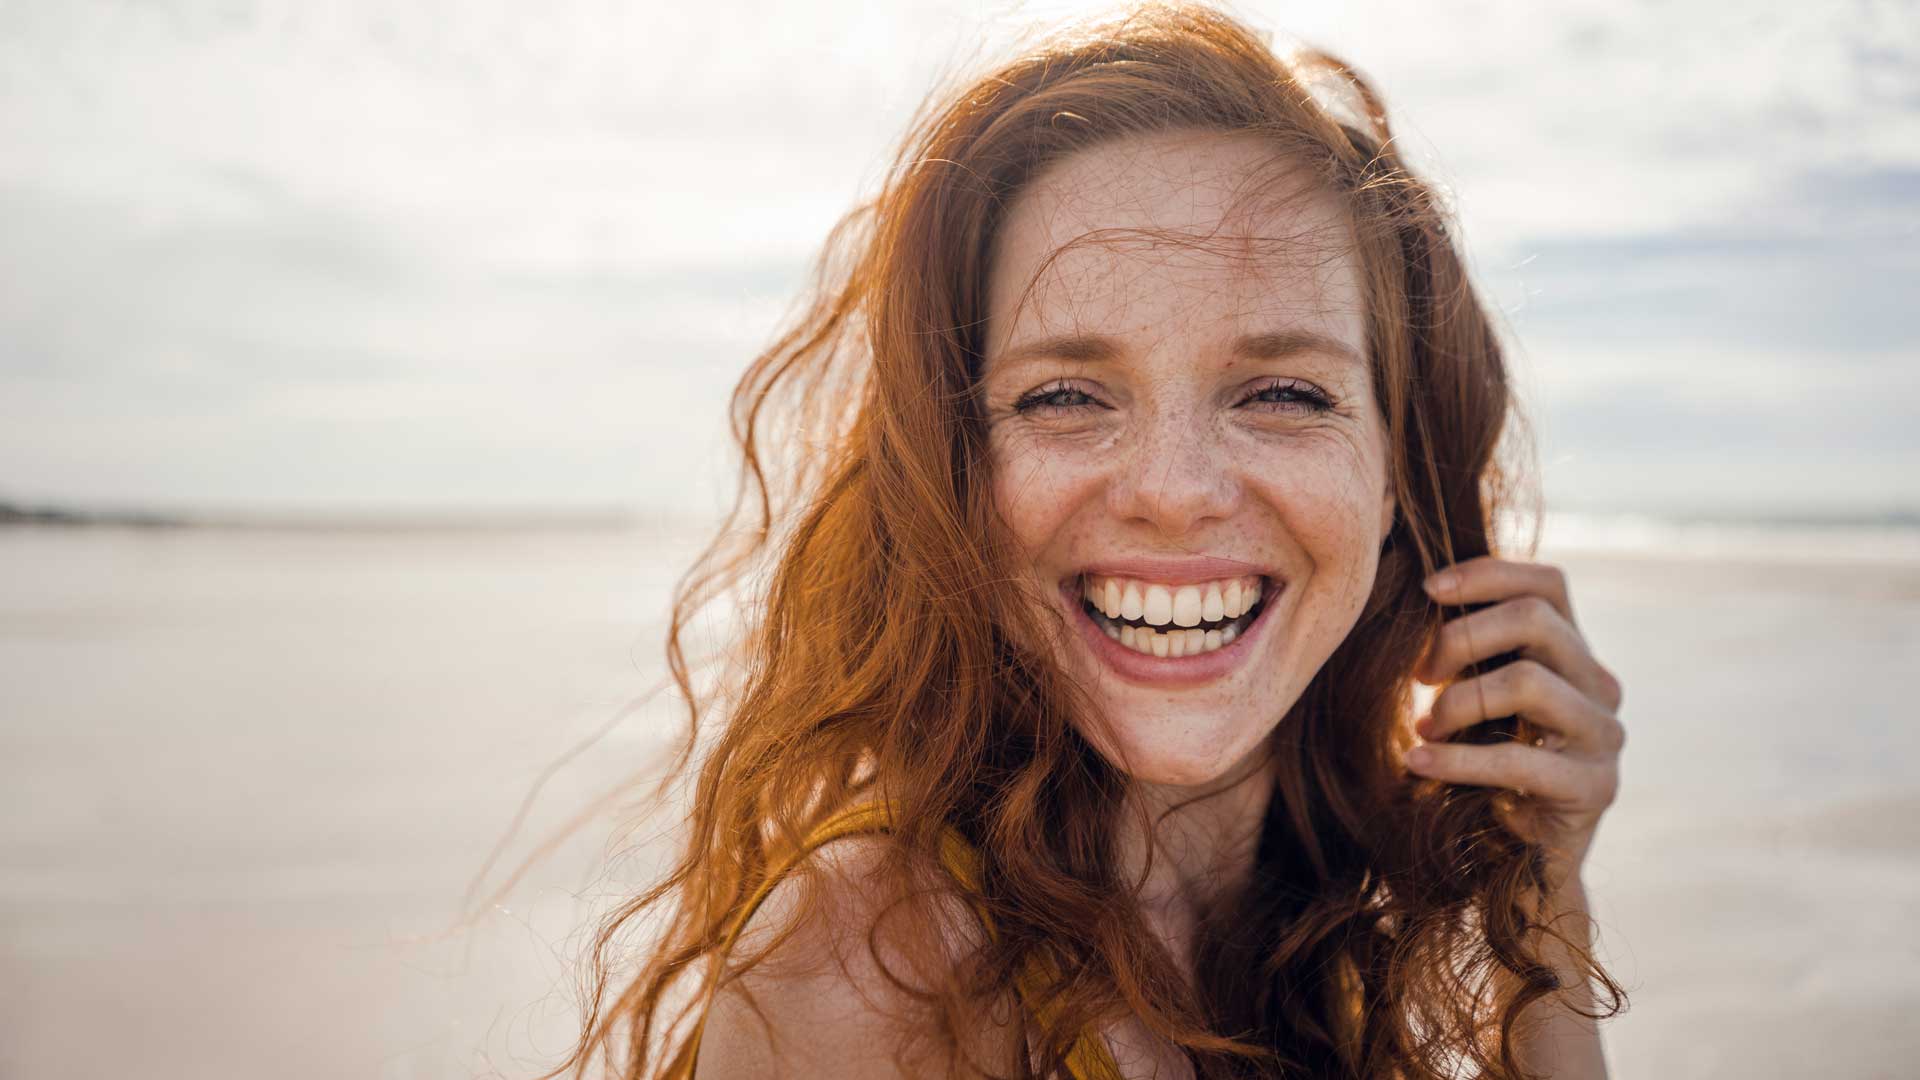 smiling girl on beach